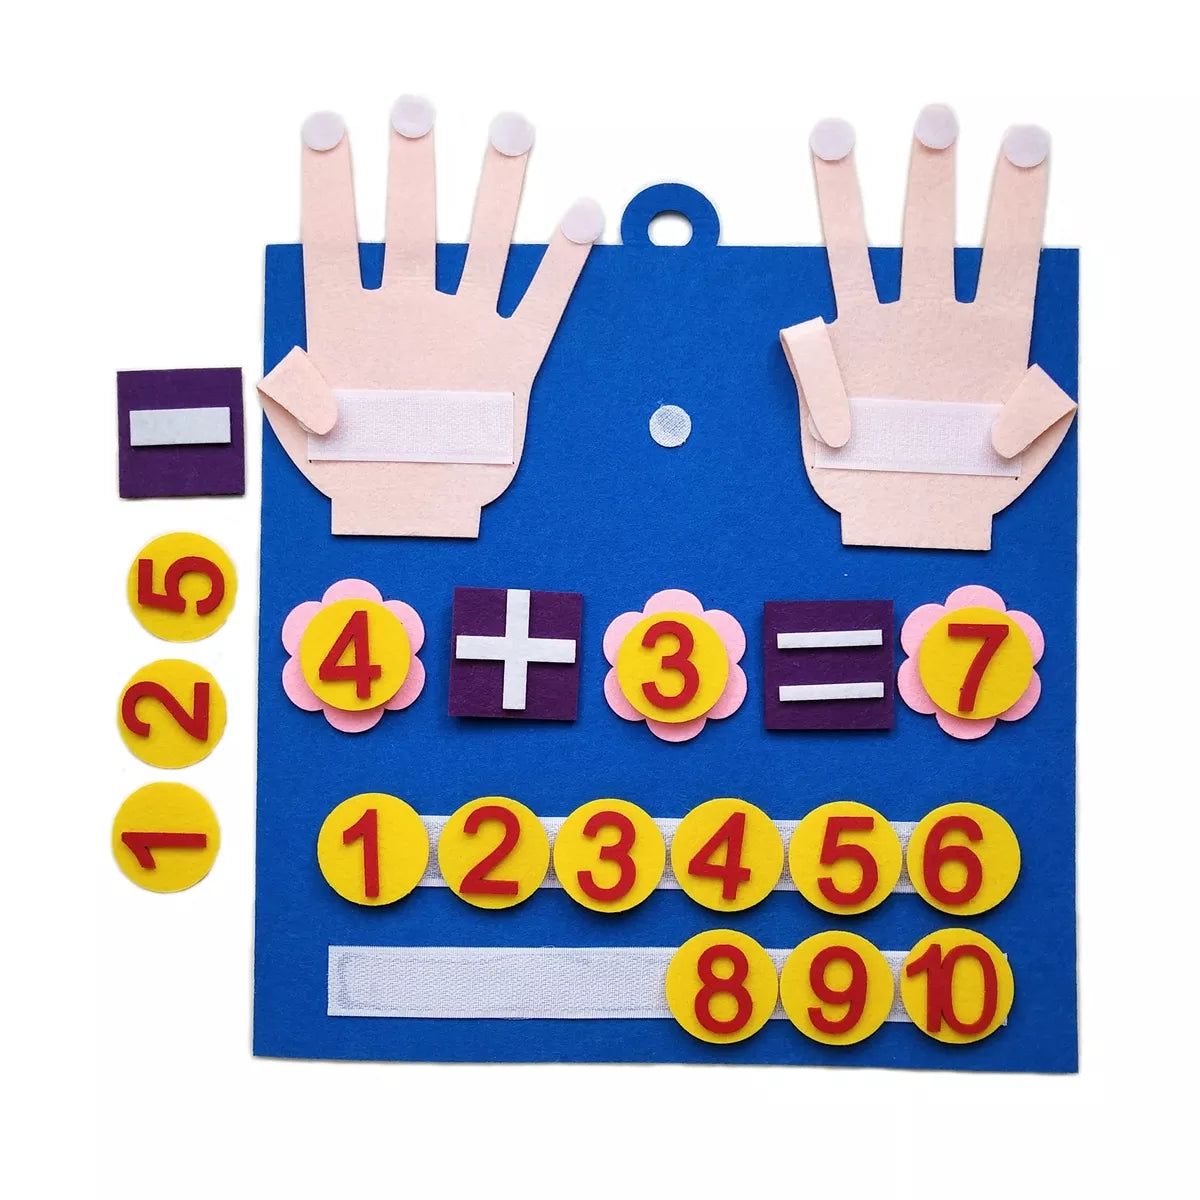 O Brinquedo® - Counting Fun Brinquedo Para Aprendizado De Matemática